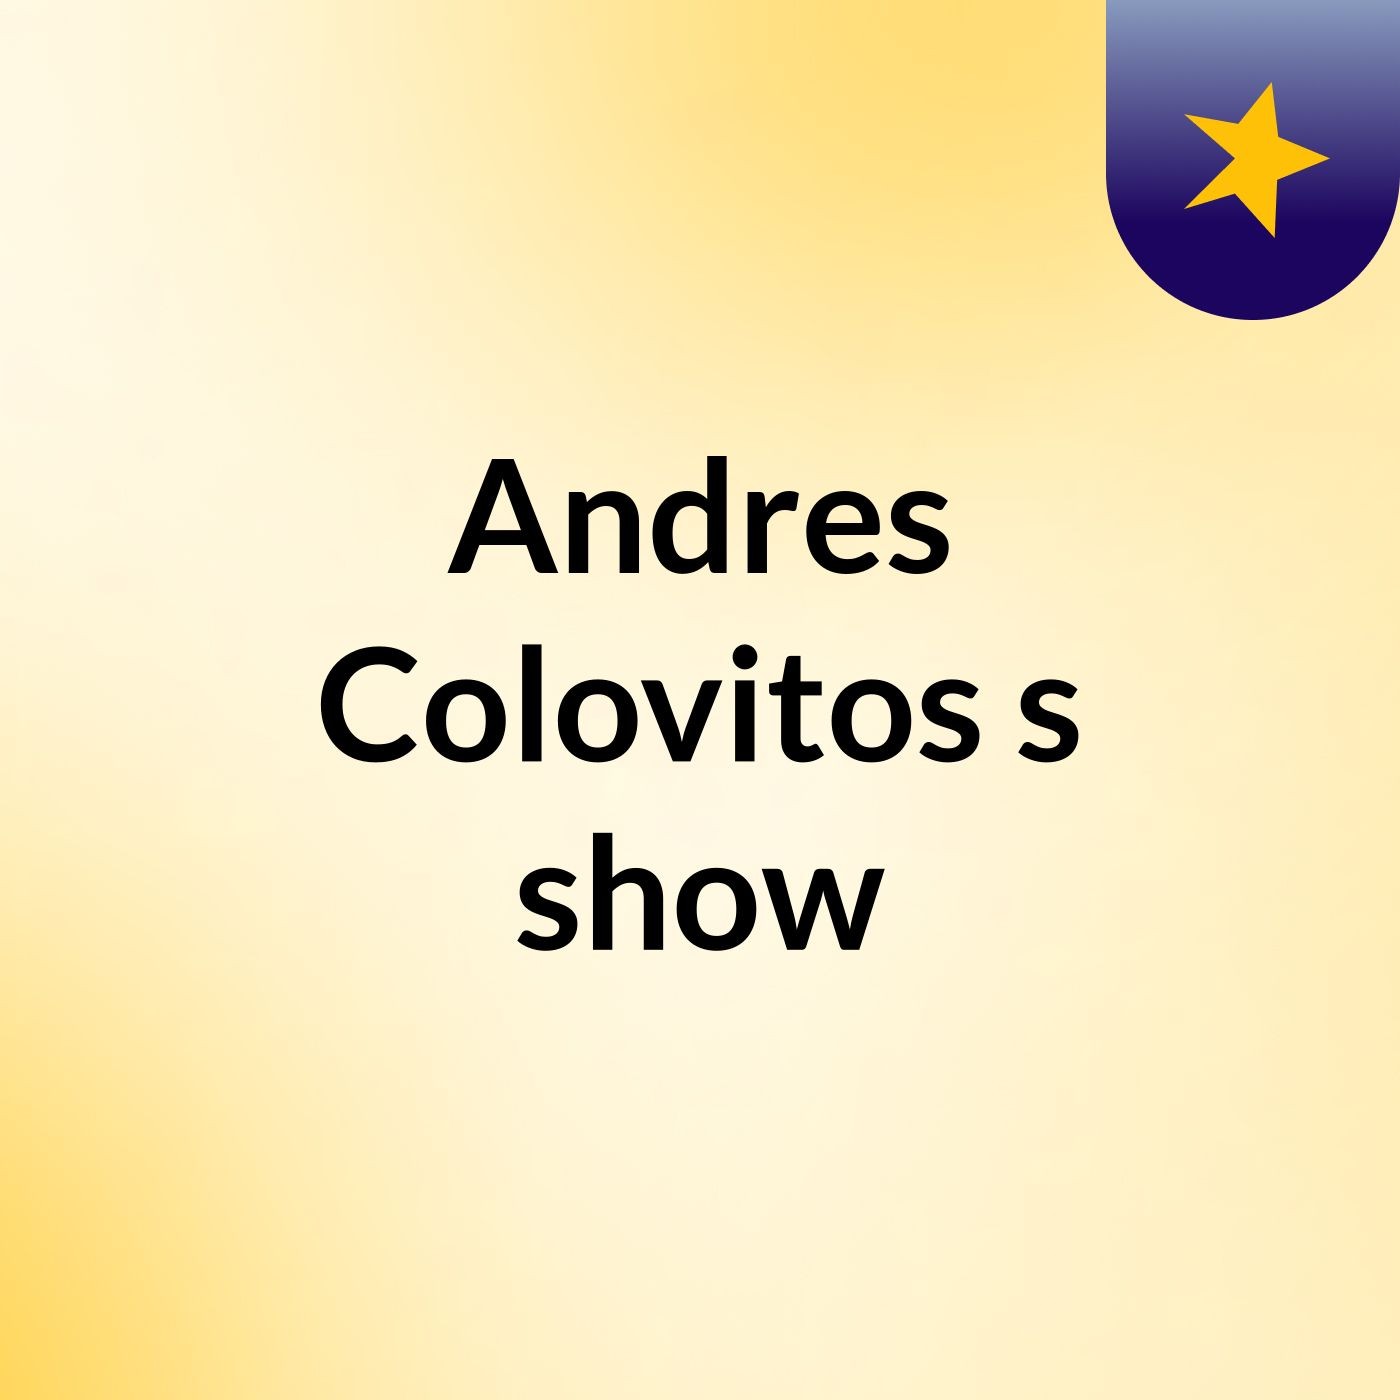 Andres Colovitos's show